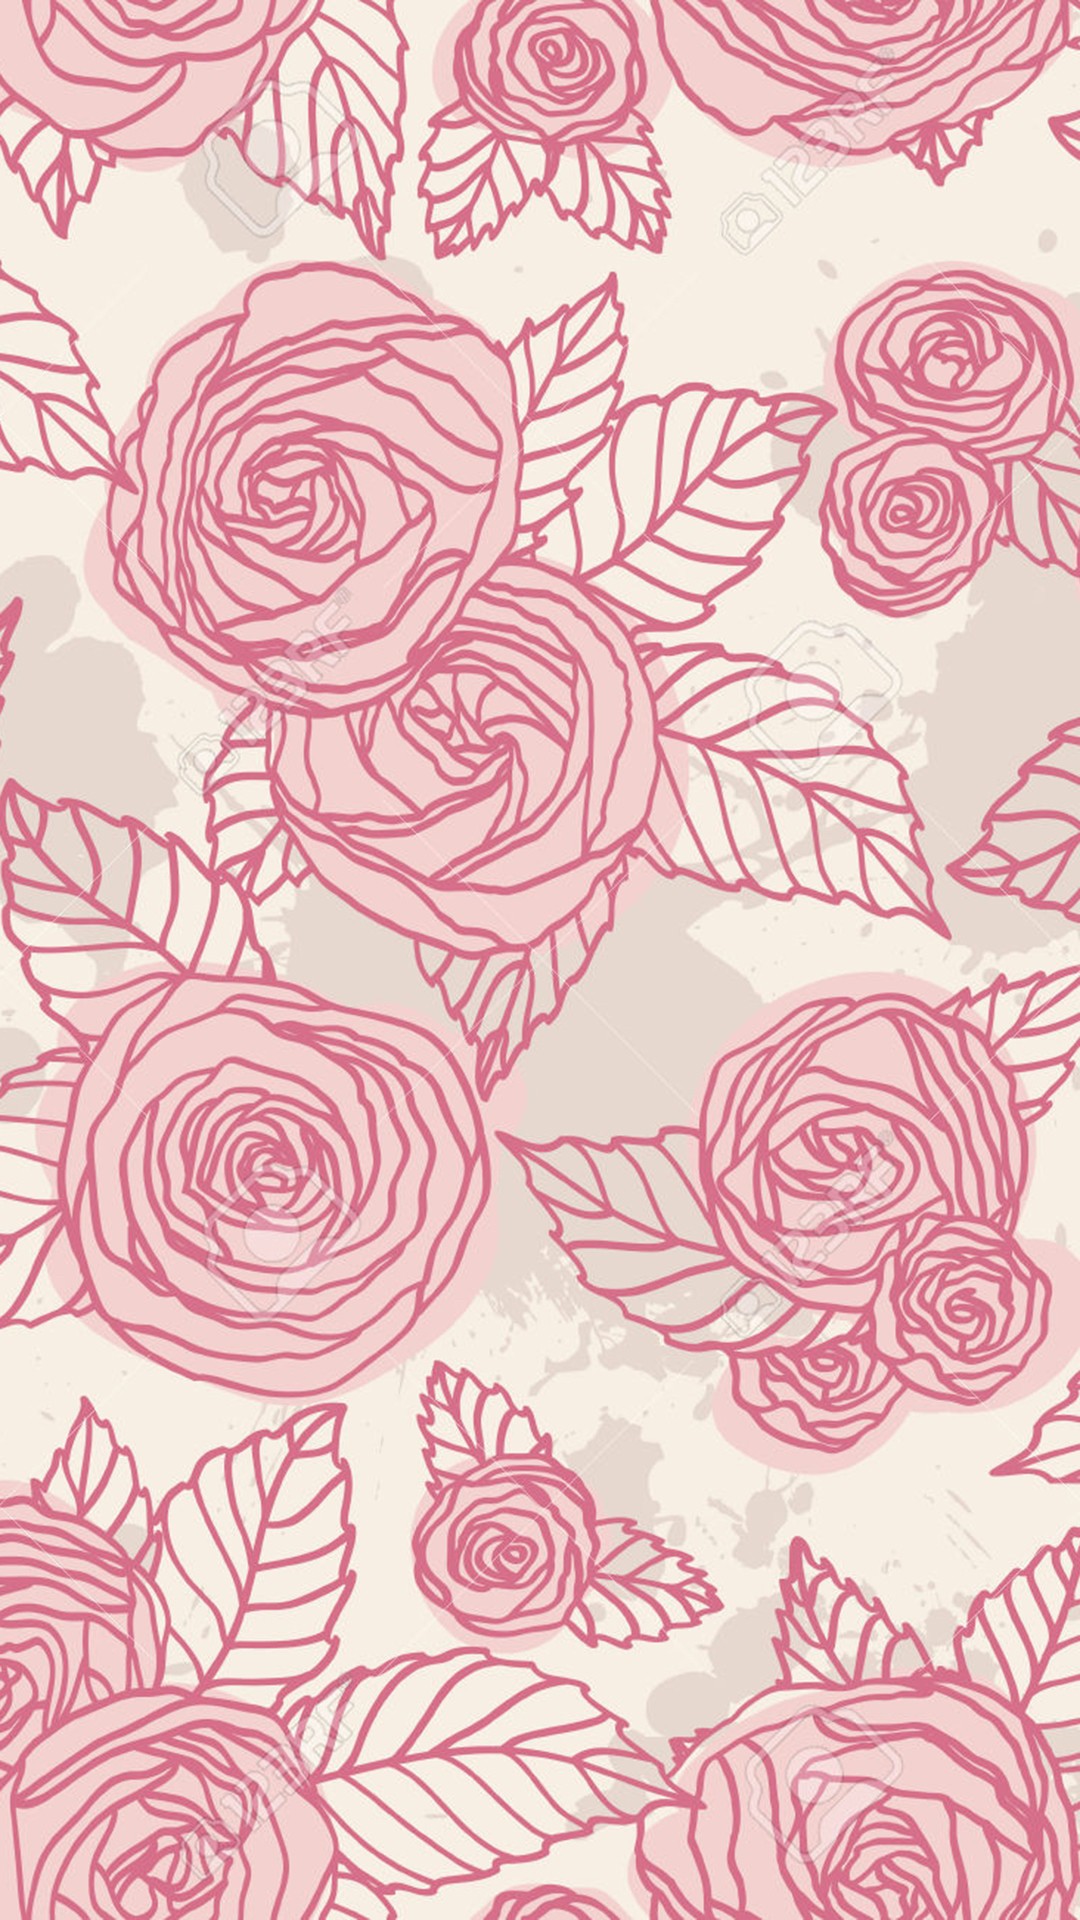 wallpapers tumblr,pink,pattern,rose,drawing,garden roses